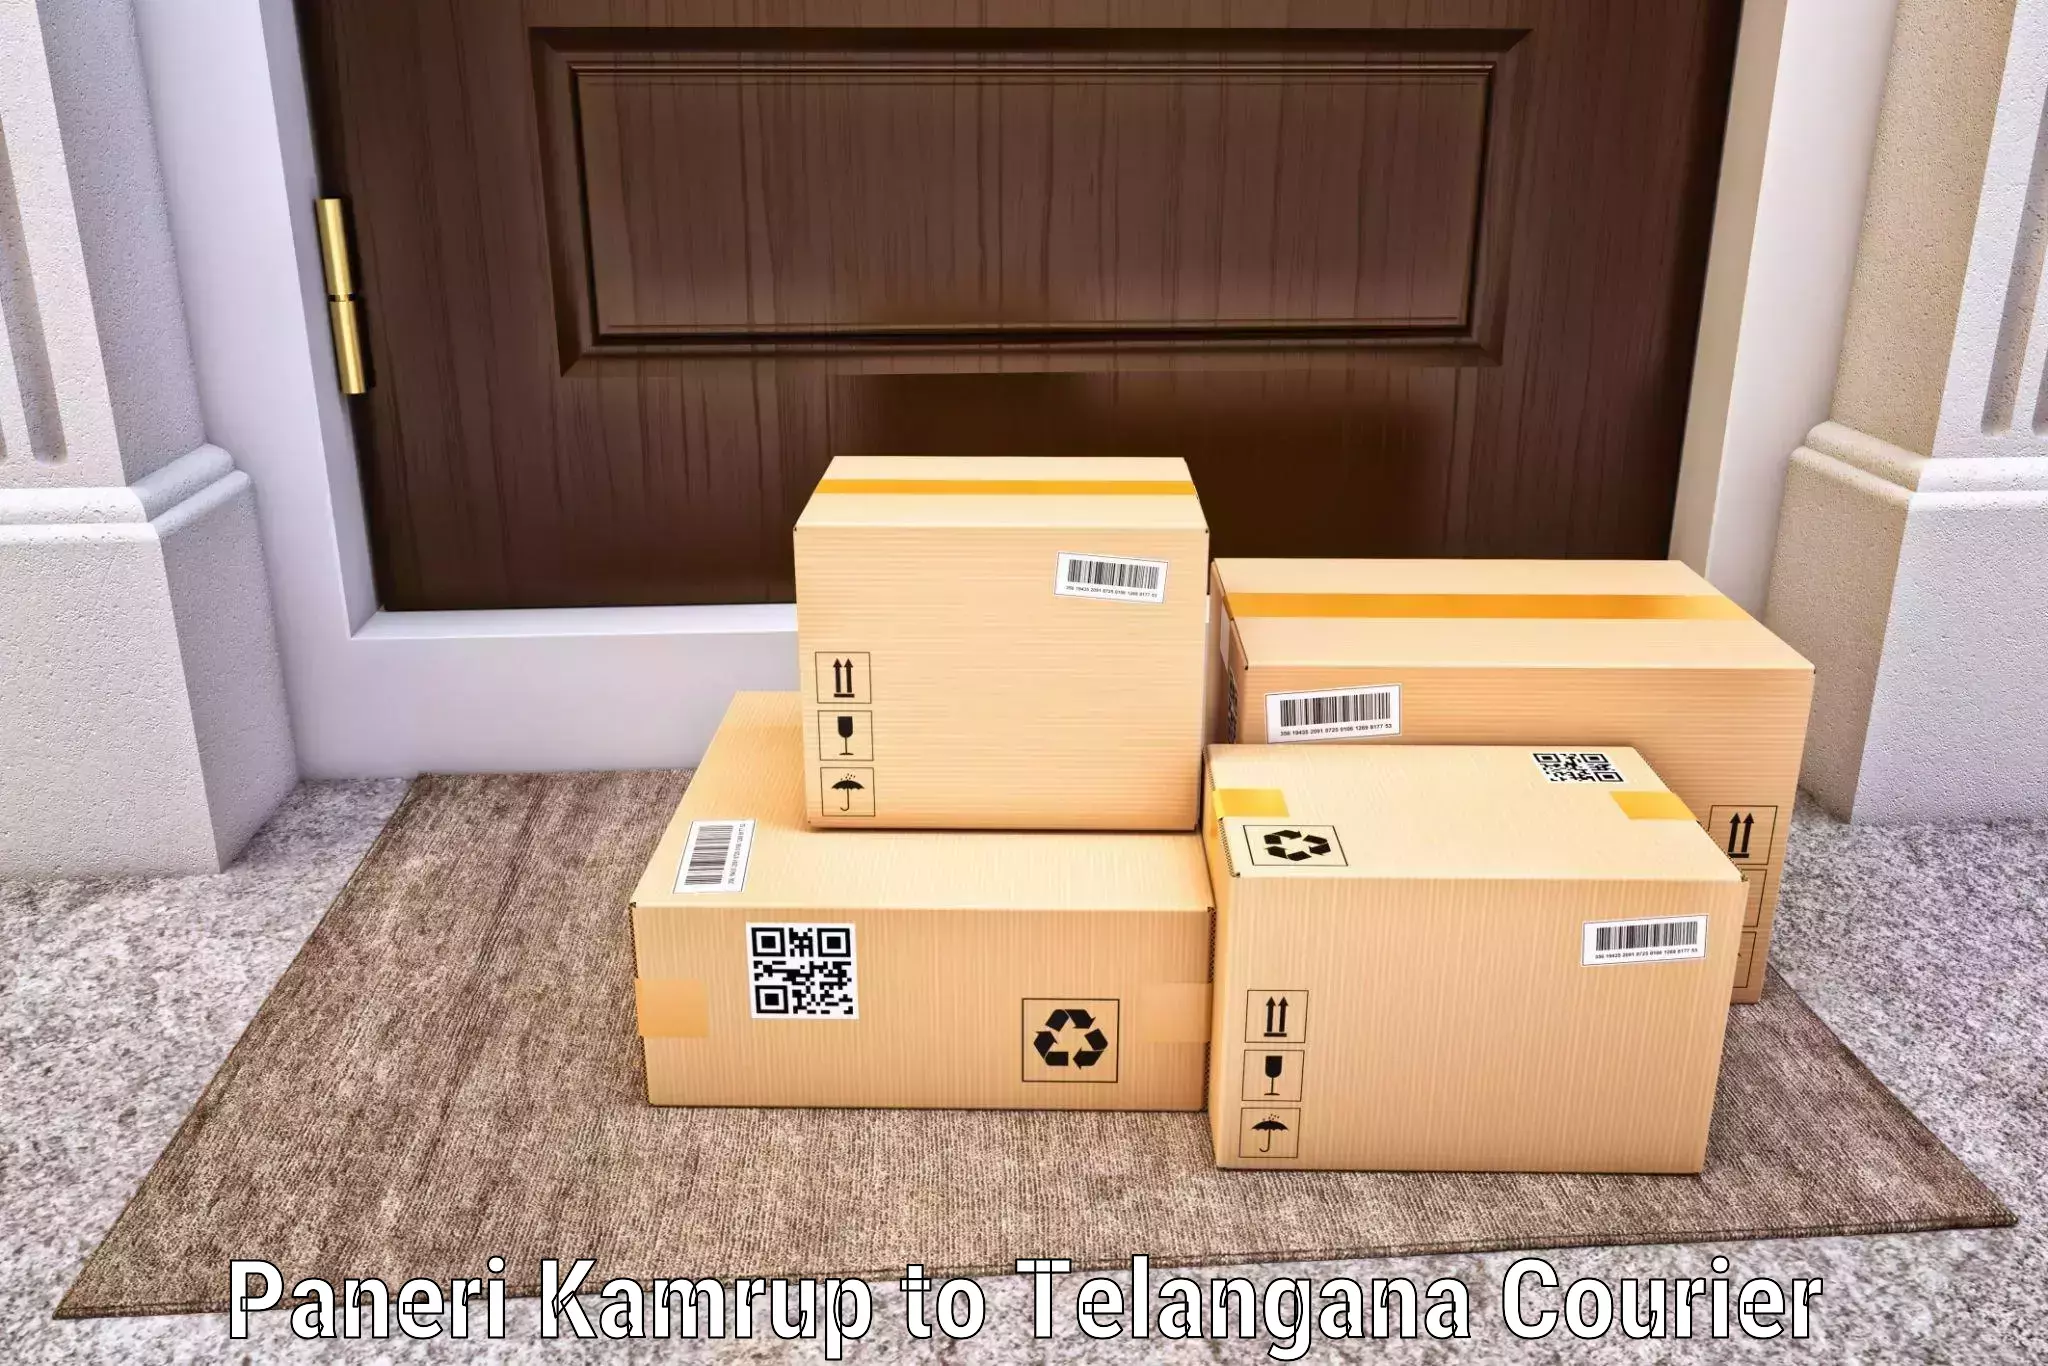 Secure shipping methods Paneri Kamrup to Jangaon